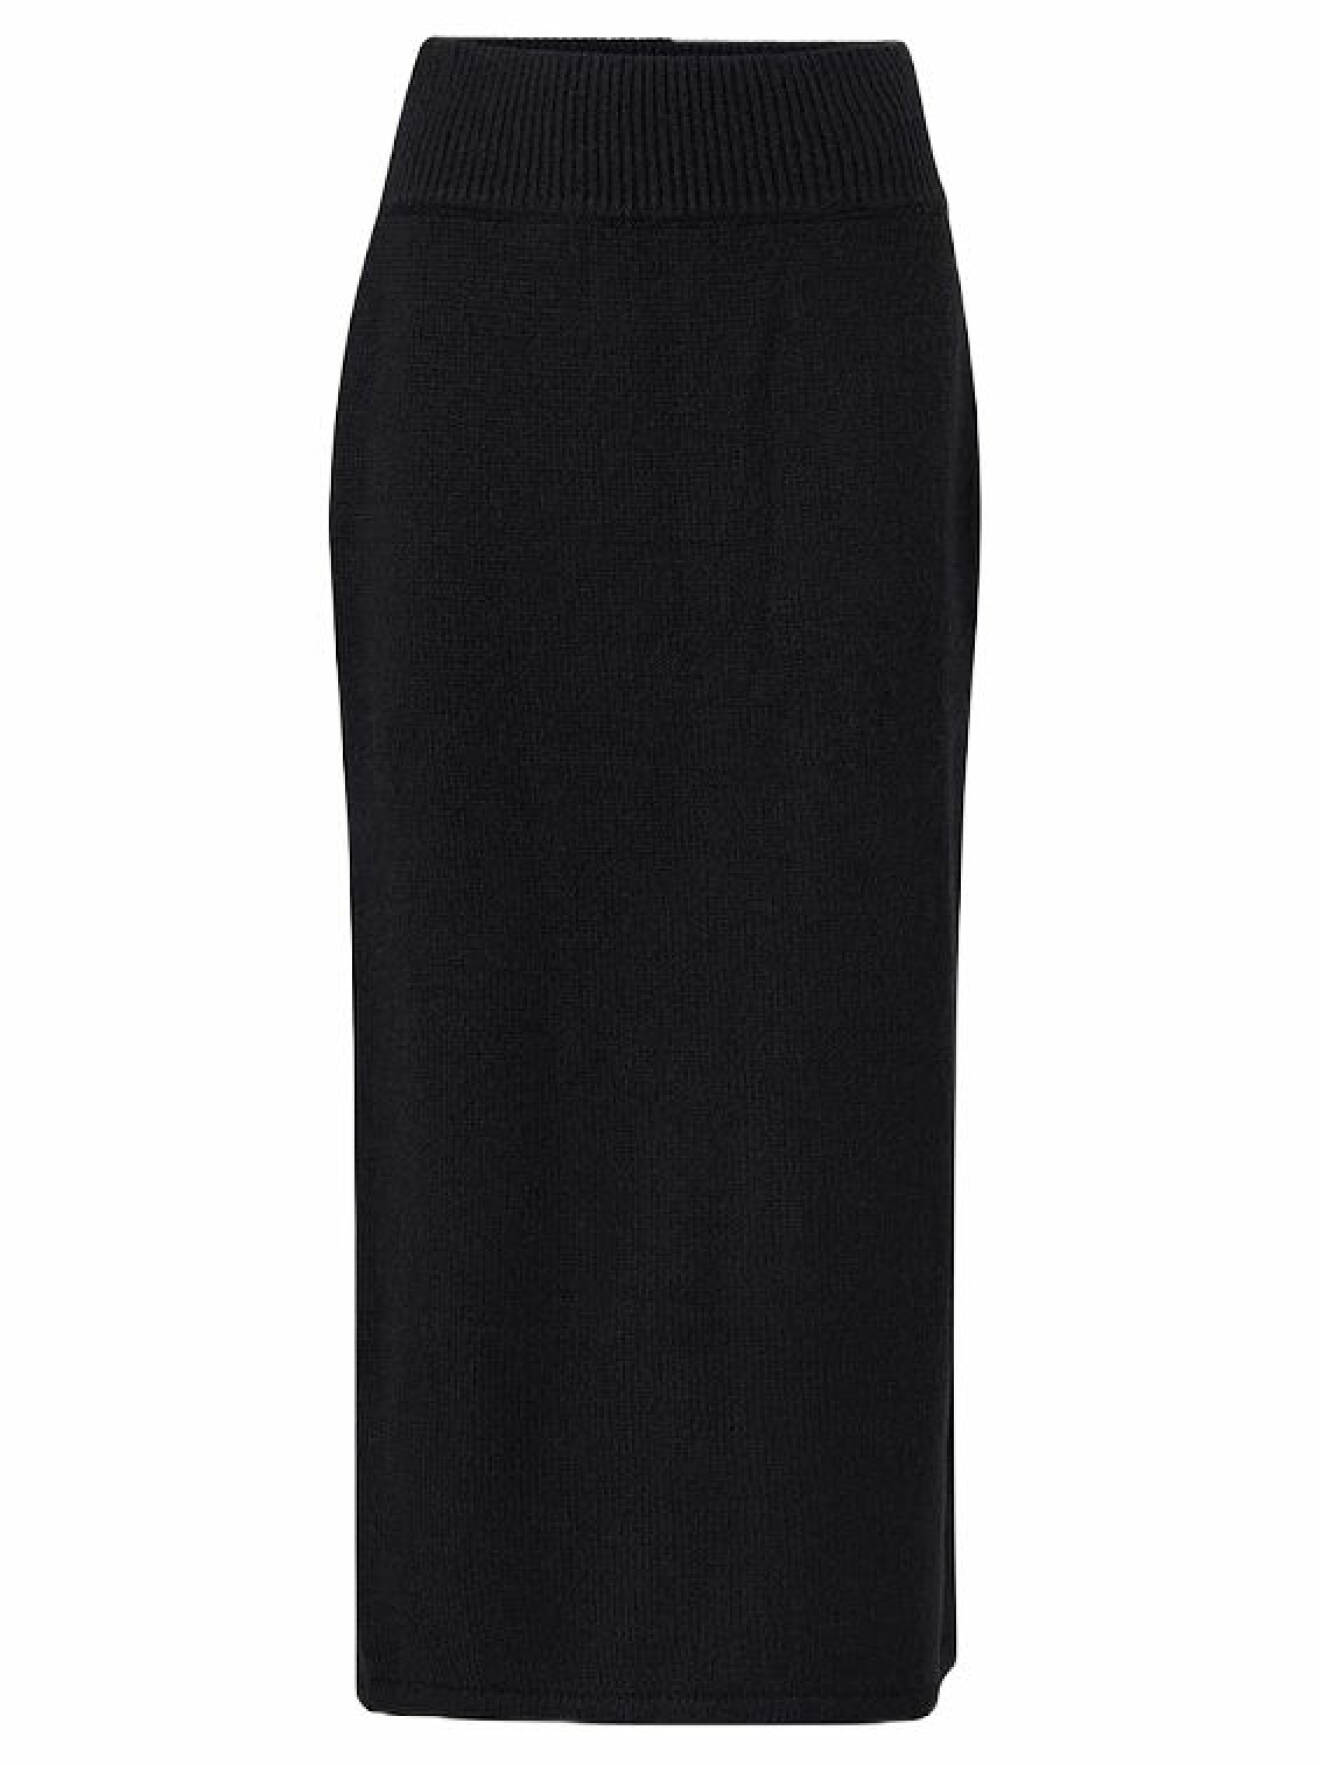 svart stickad kjol lång från ellos